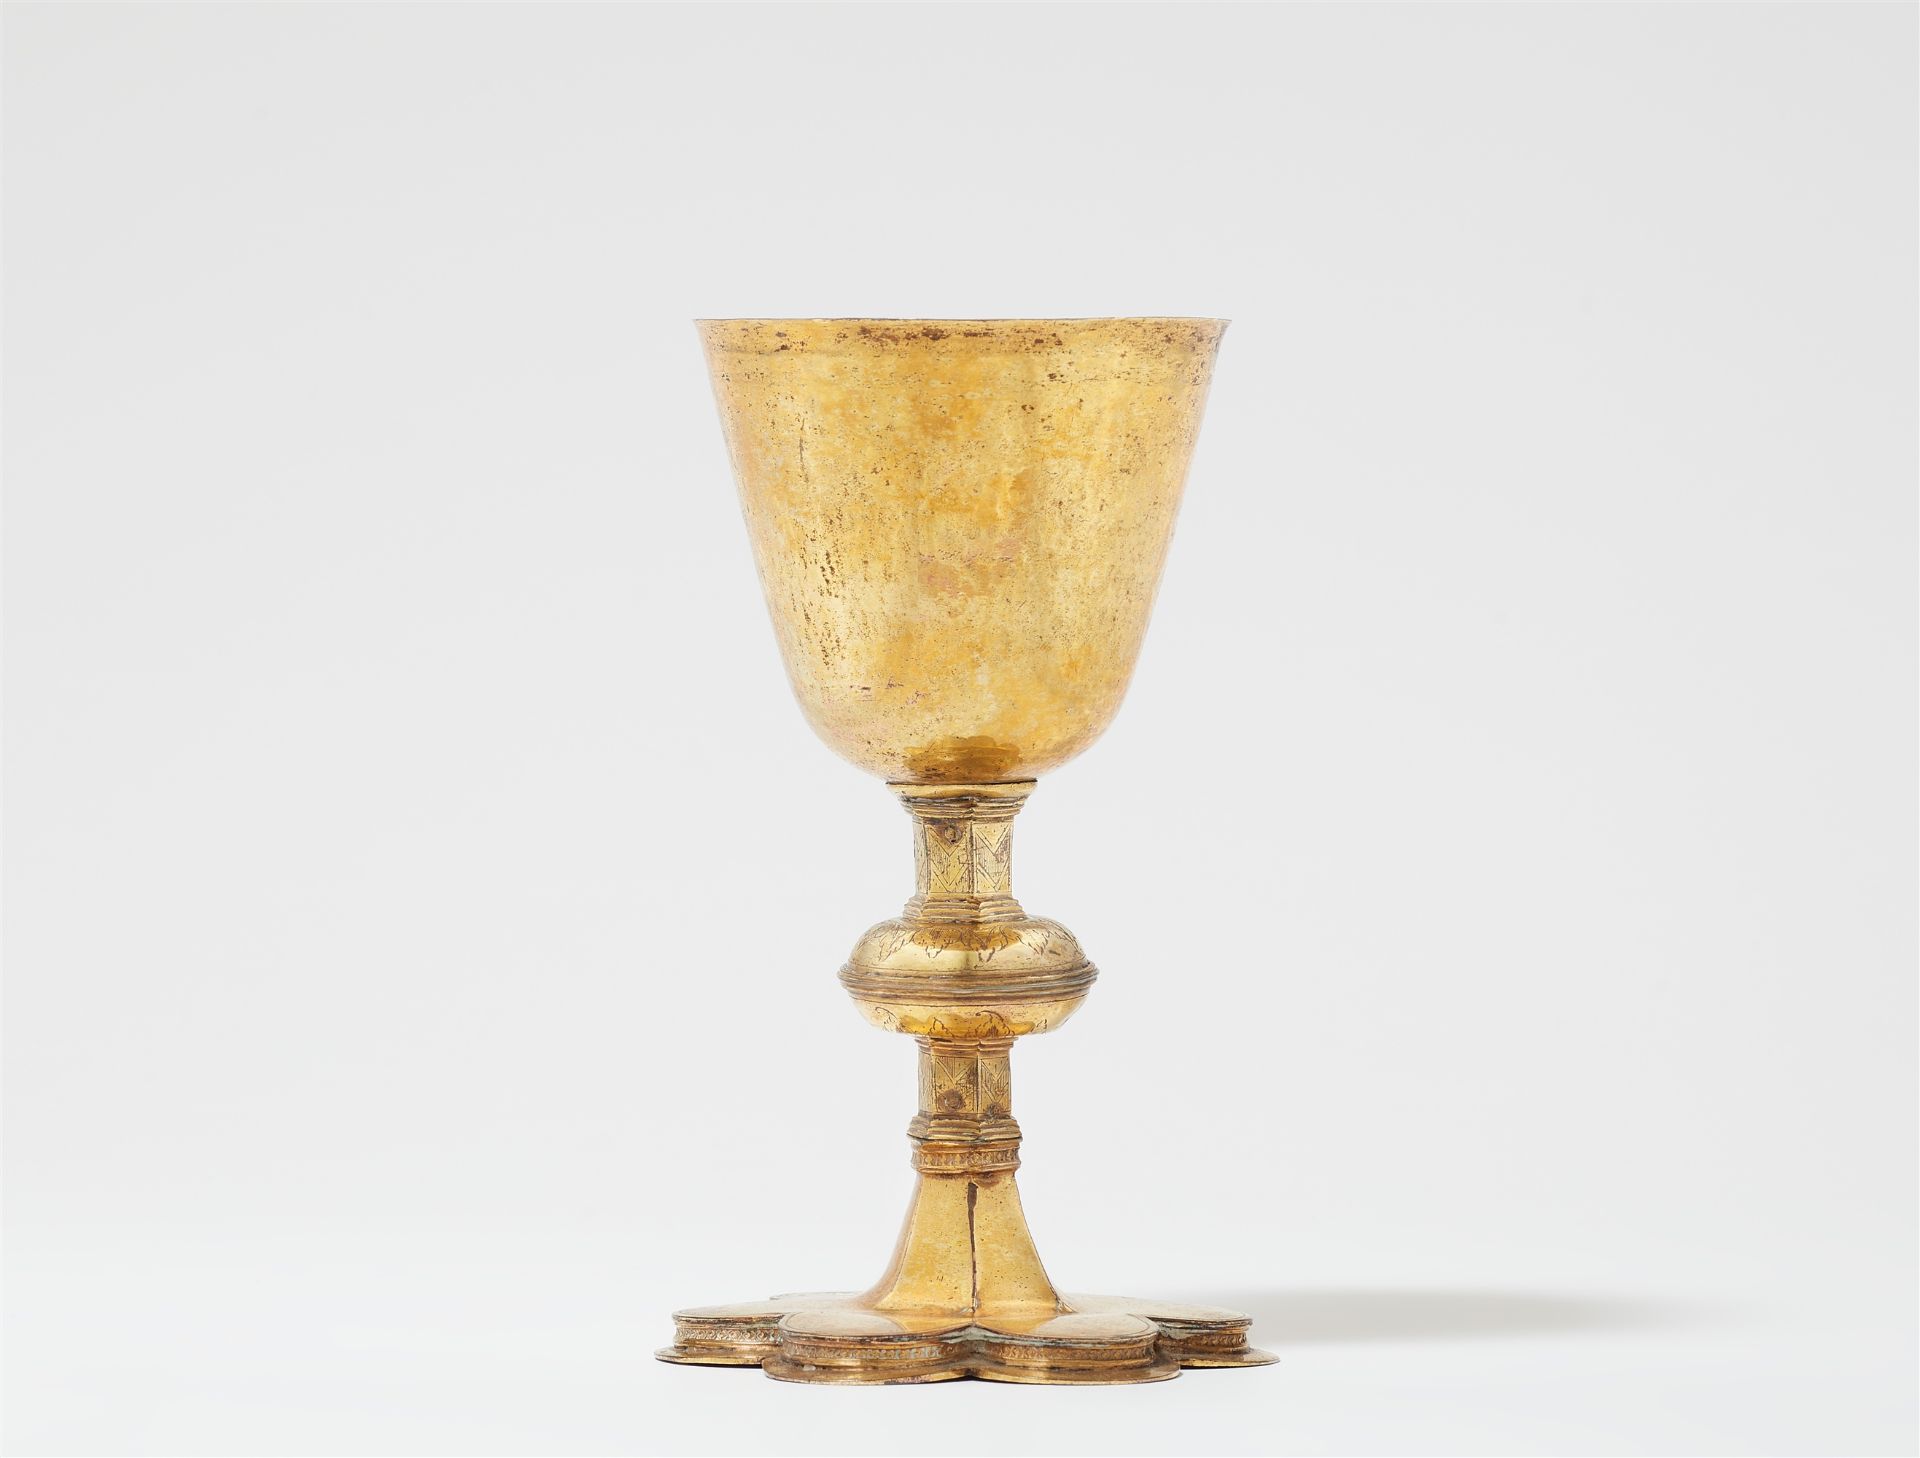 A gilded copper communion chalice